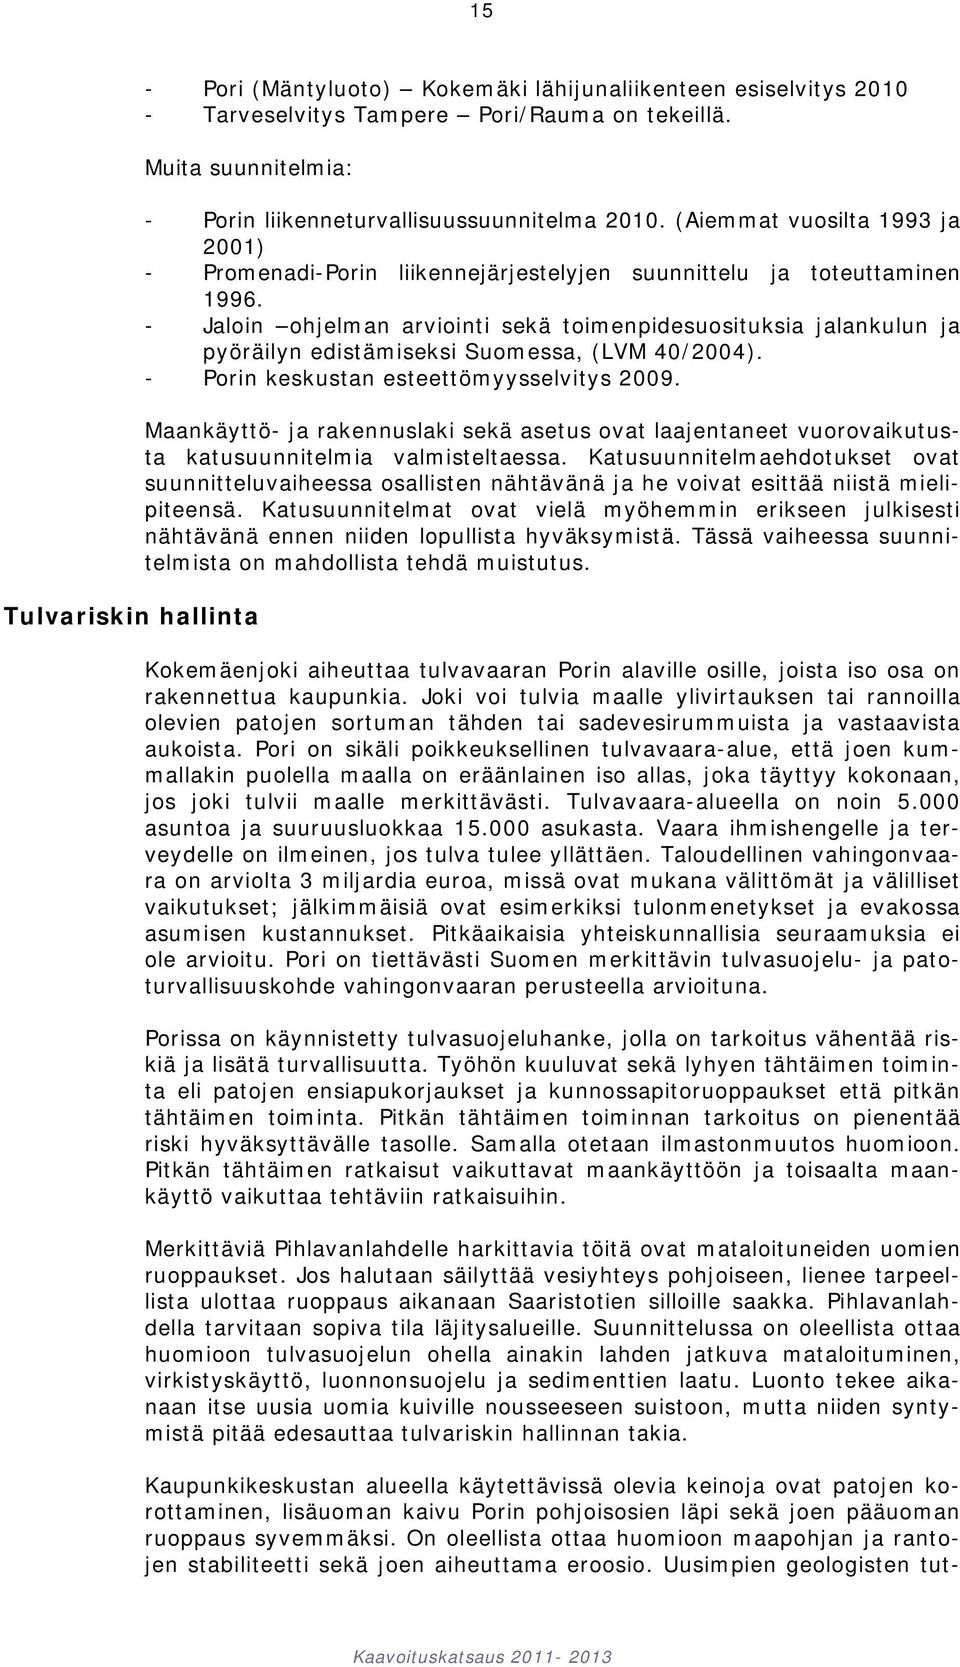 - Jaloin ohjelman arviointi sekä toimenpidesuosituksia jalankulun ja pyöräilyn edistämiseksi Suomessa, (LVM 40/2004). - Porin keskustan esteettömyysselvitys 2009.